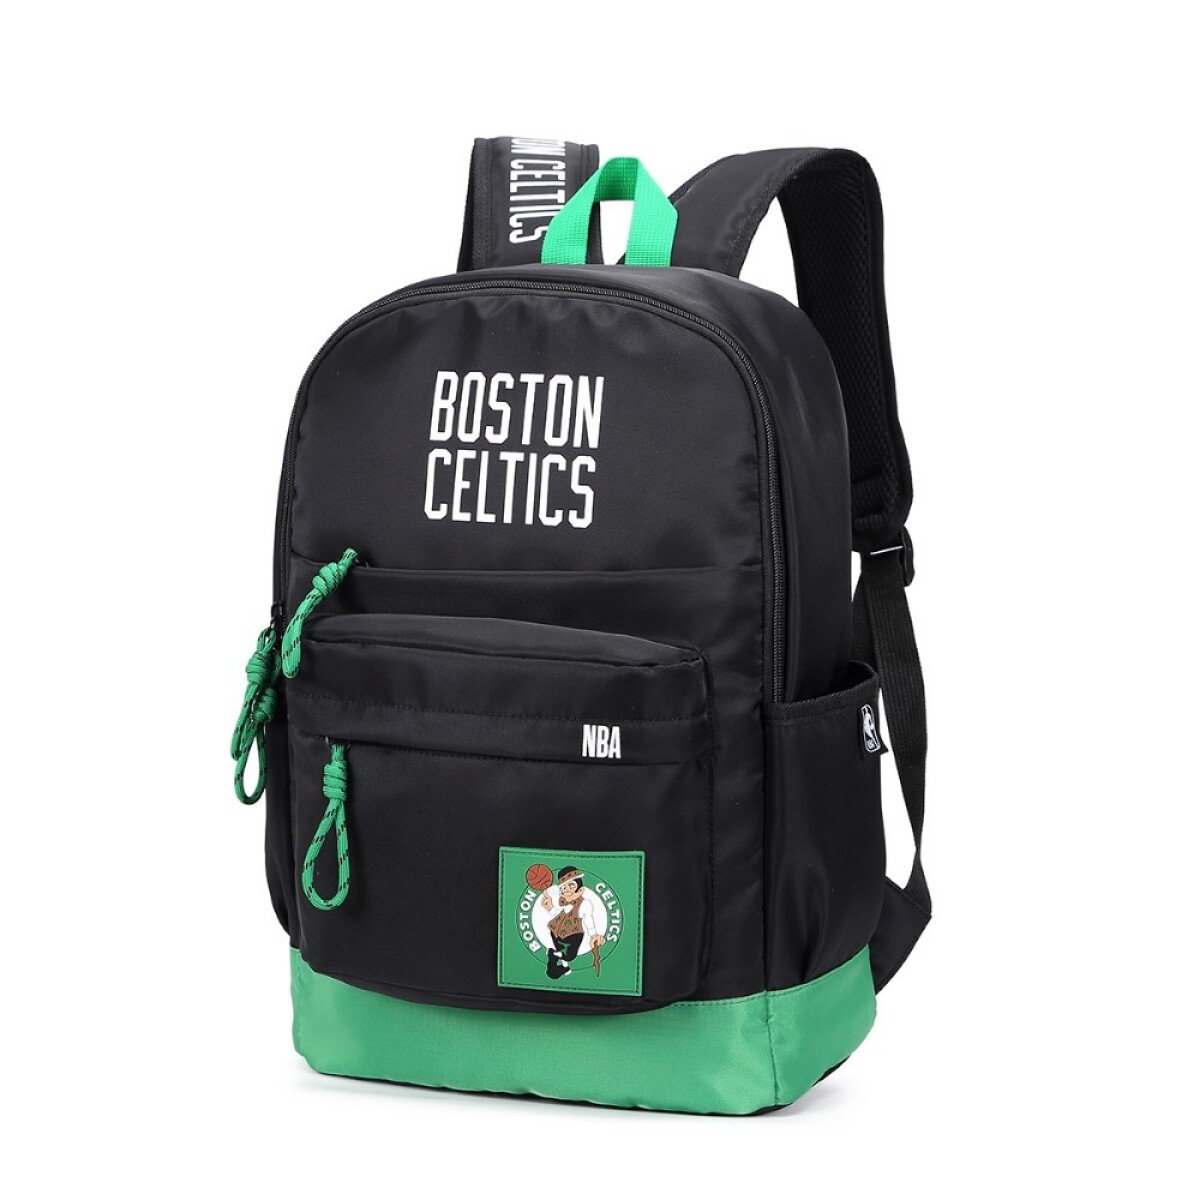 Mochila clásica sport Boston Celtics - NBA 